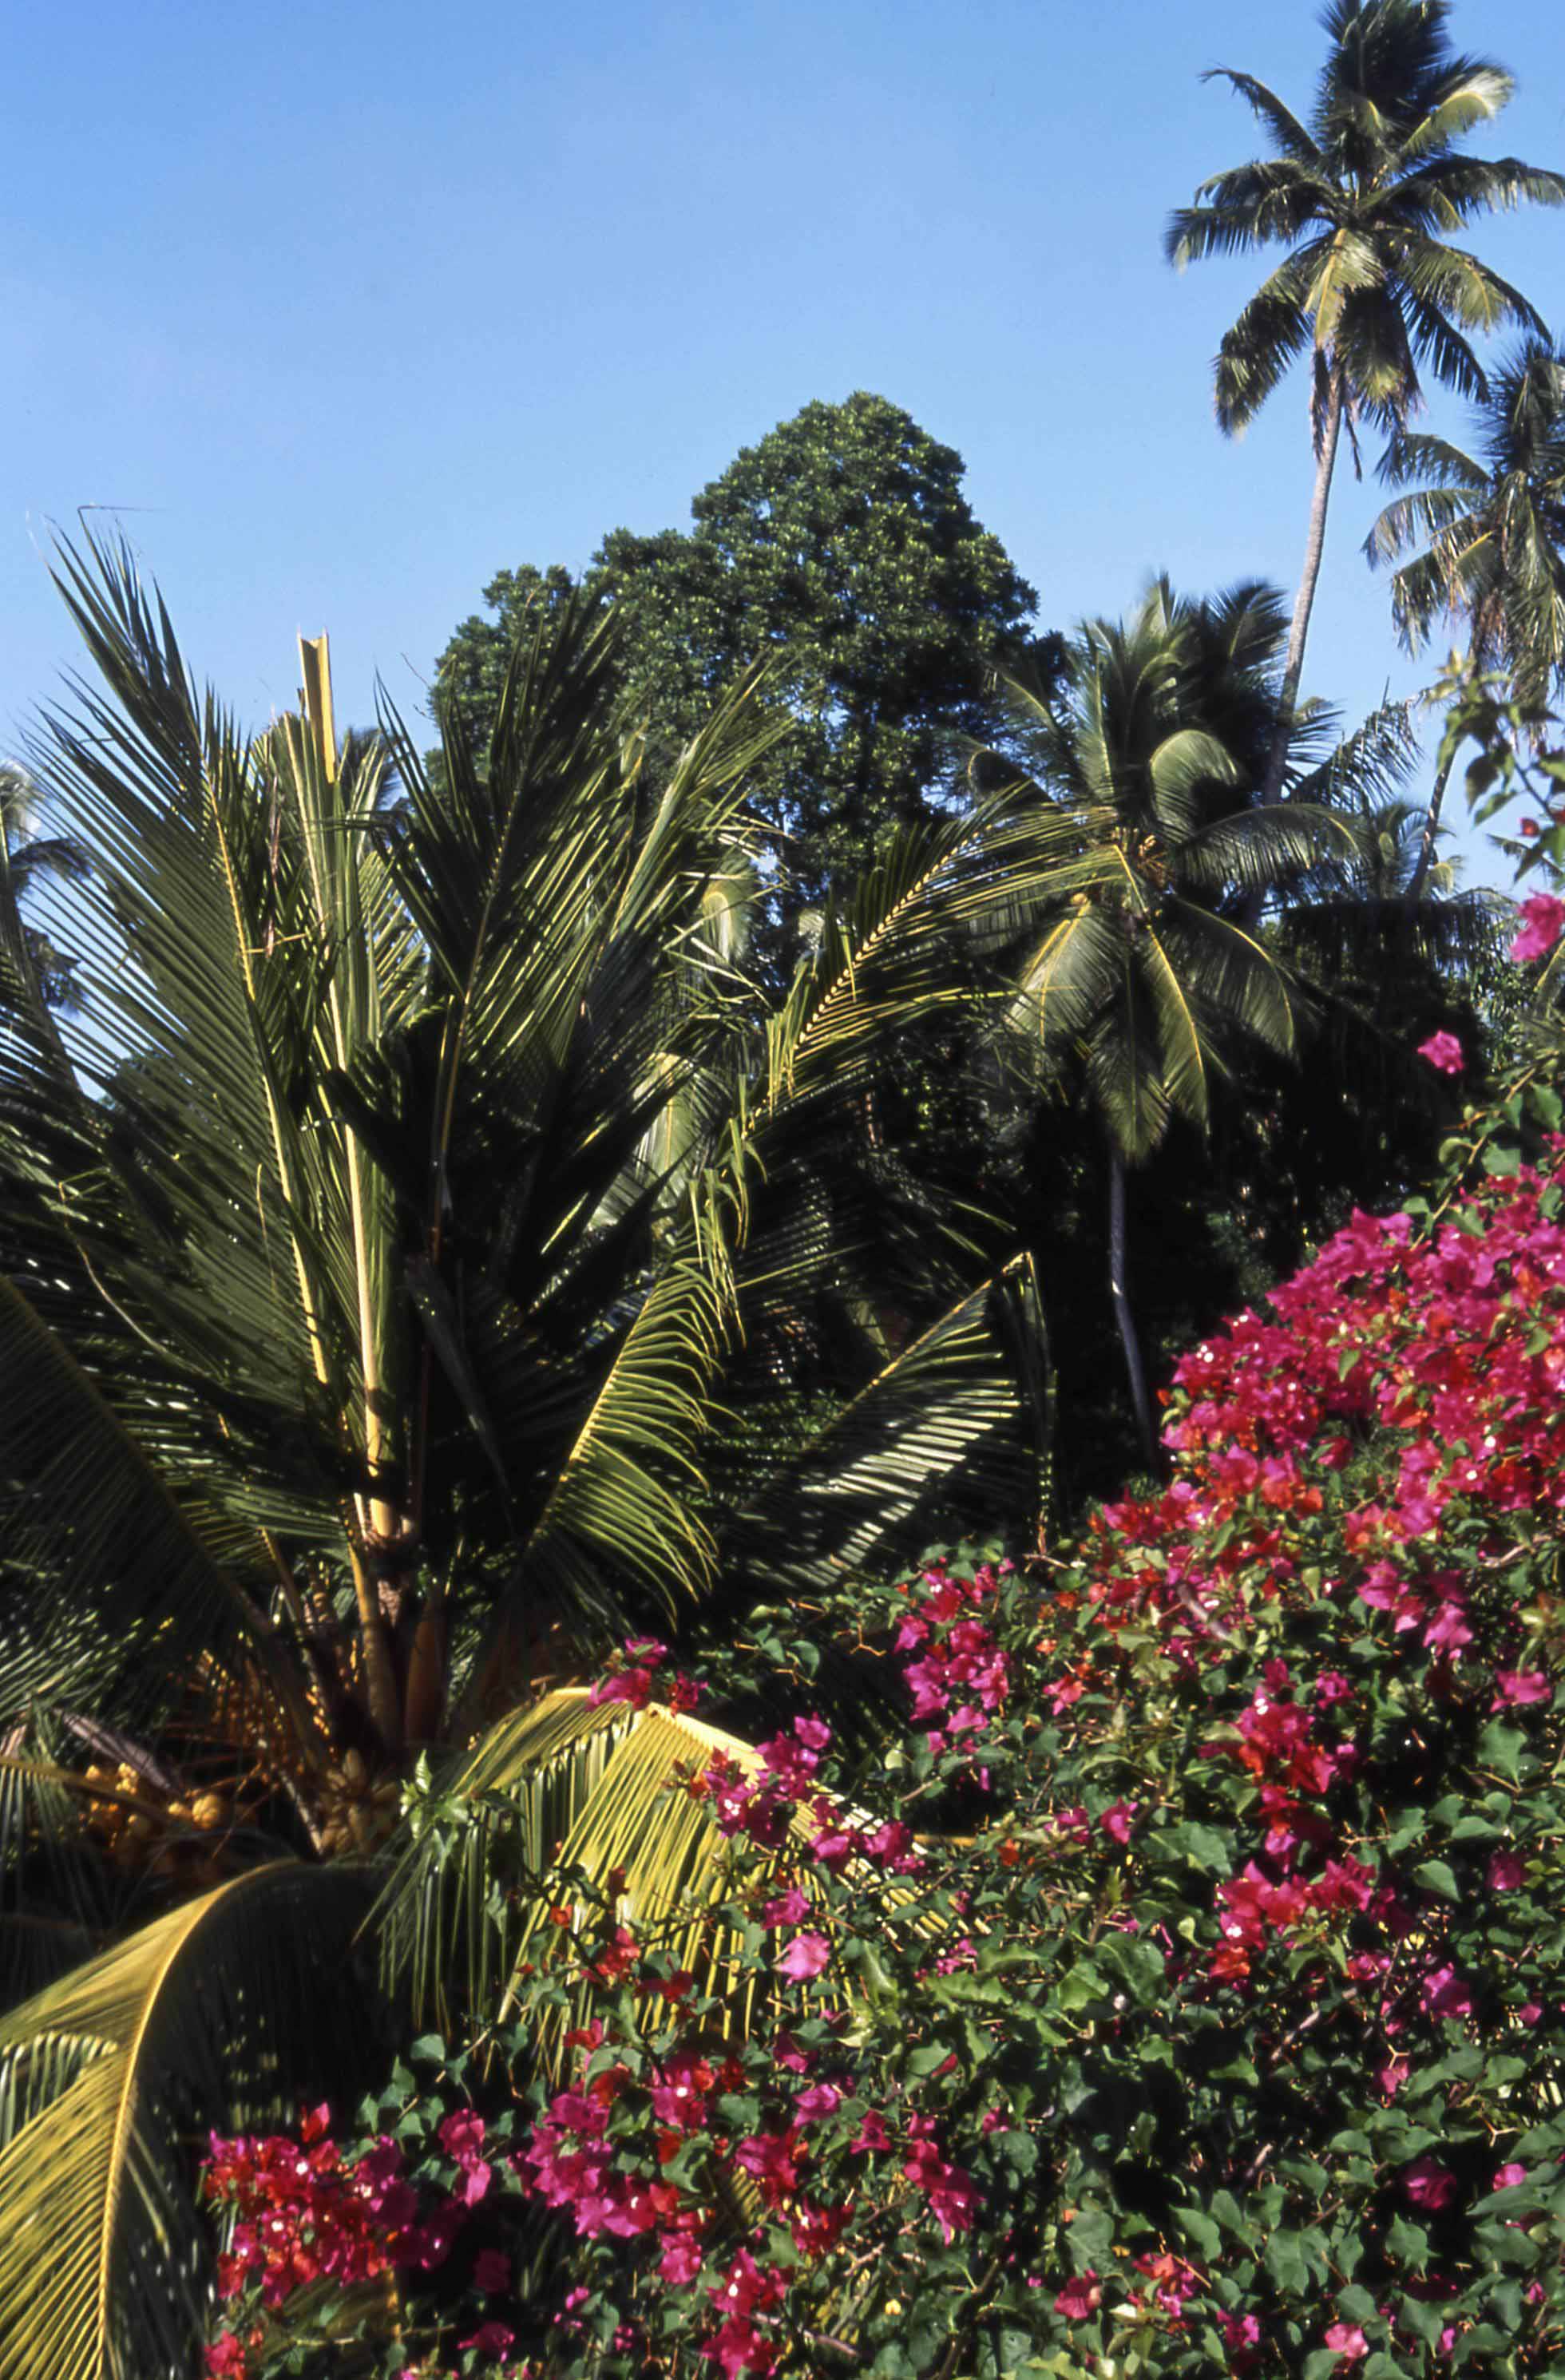  Экотуризм и заповедные парки Цейлона  - фото 4